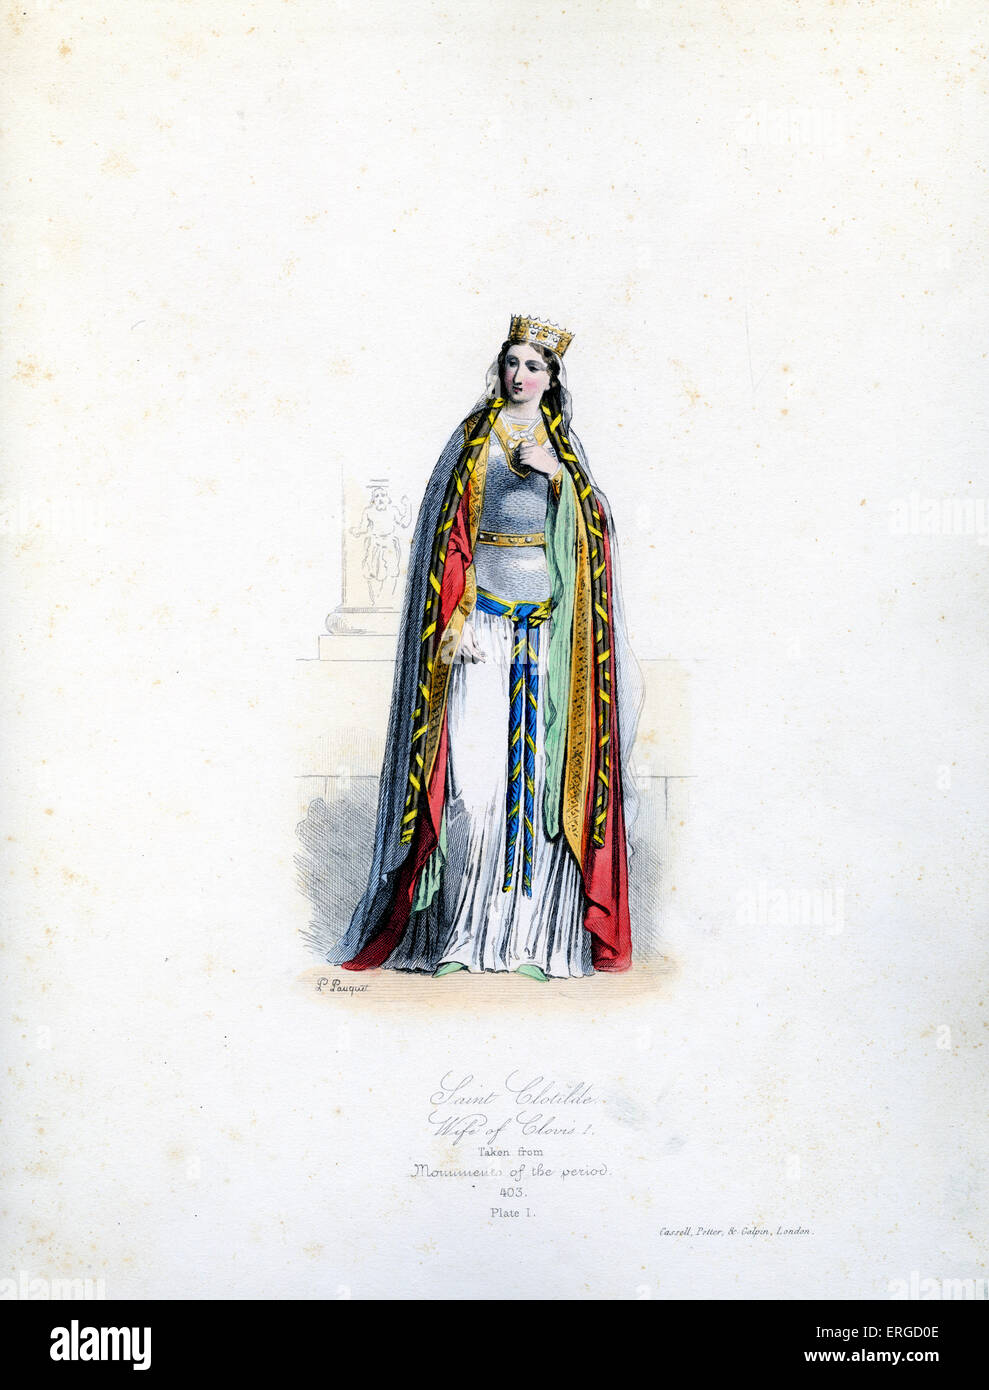 Santa Clotilde - da incisione di Polidor Pauquet. La seconda moglie del re frankish Clovis I. 475-545 annuncio. Piastra I. Foto Stock